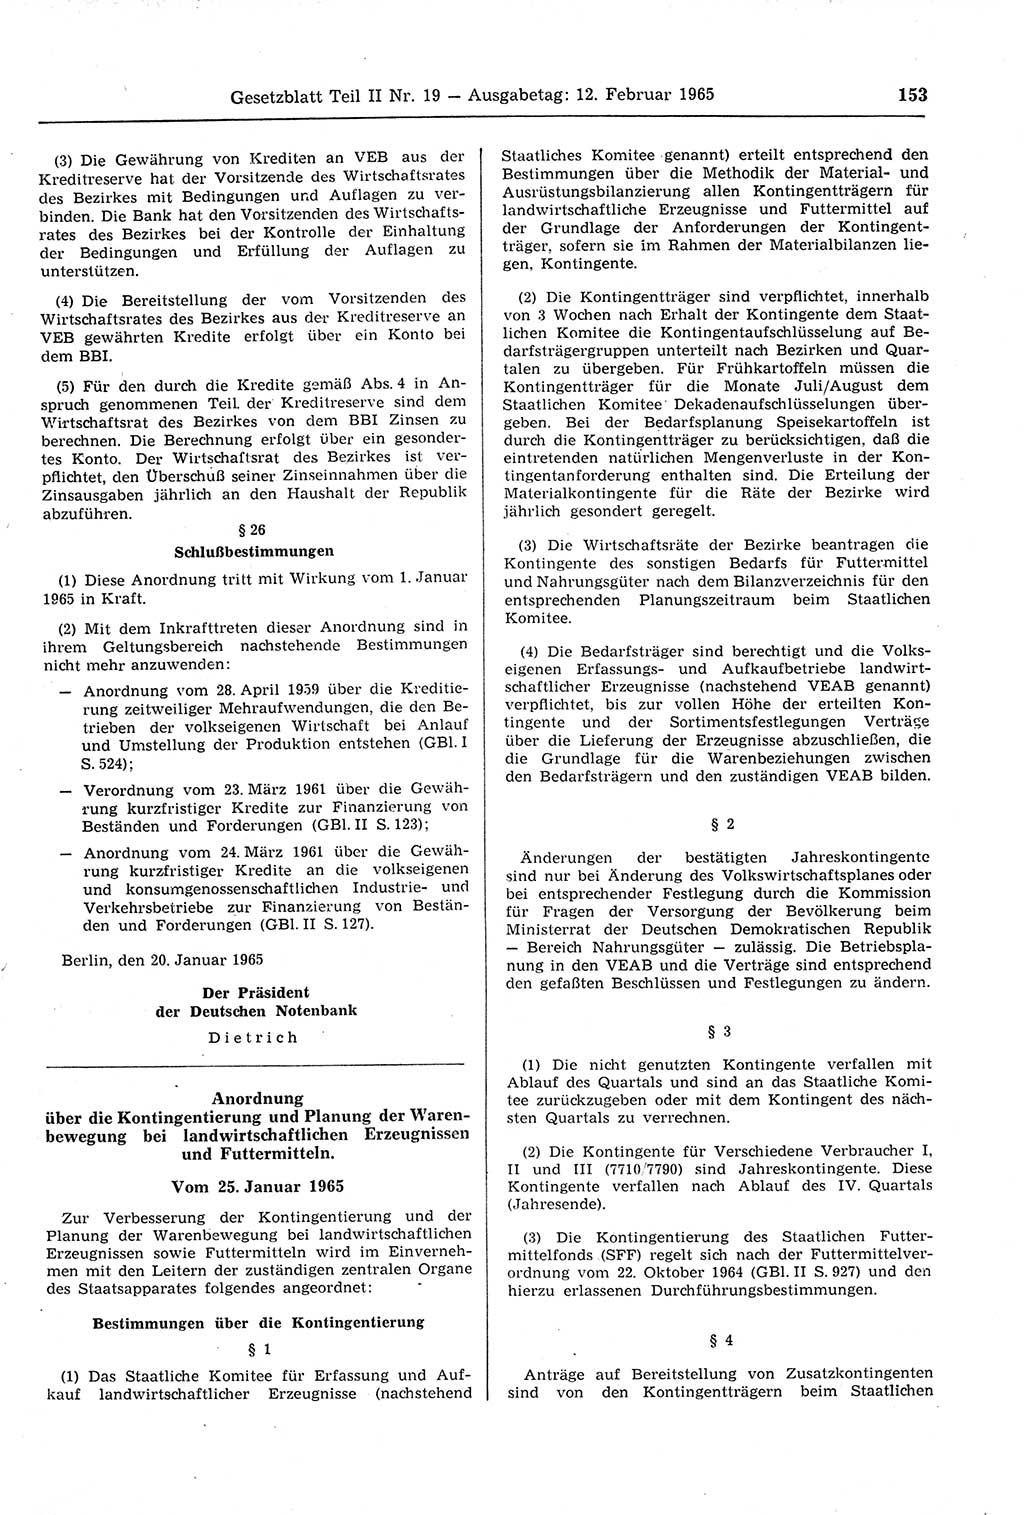 Gesetzblatt (GBl.) der Deutschen Demokratischen Republik (DDR) Teil ⅠⅠ 1965, Seite 153 (GBl. DDR ⅠⅠ 1965, S. 153)